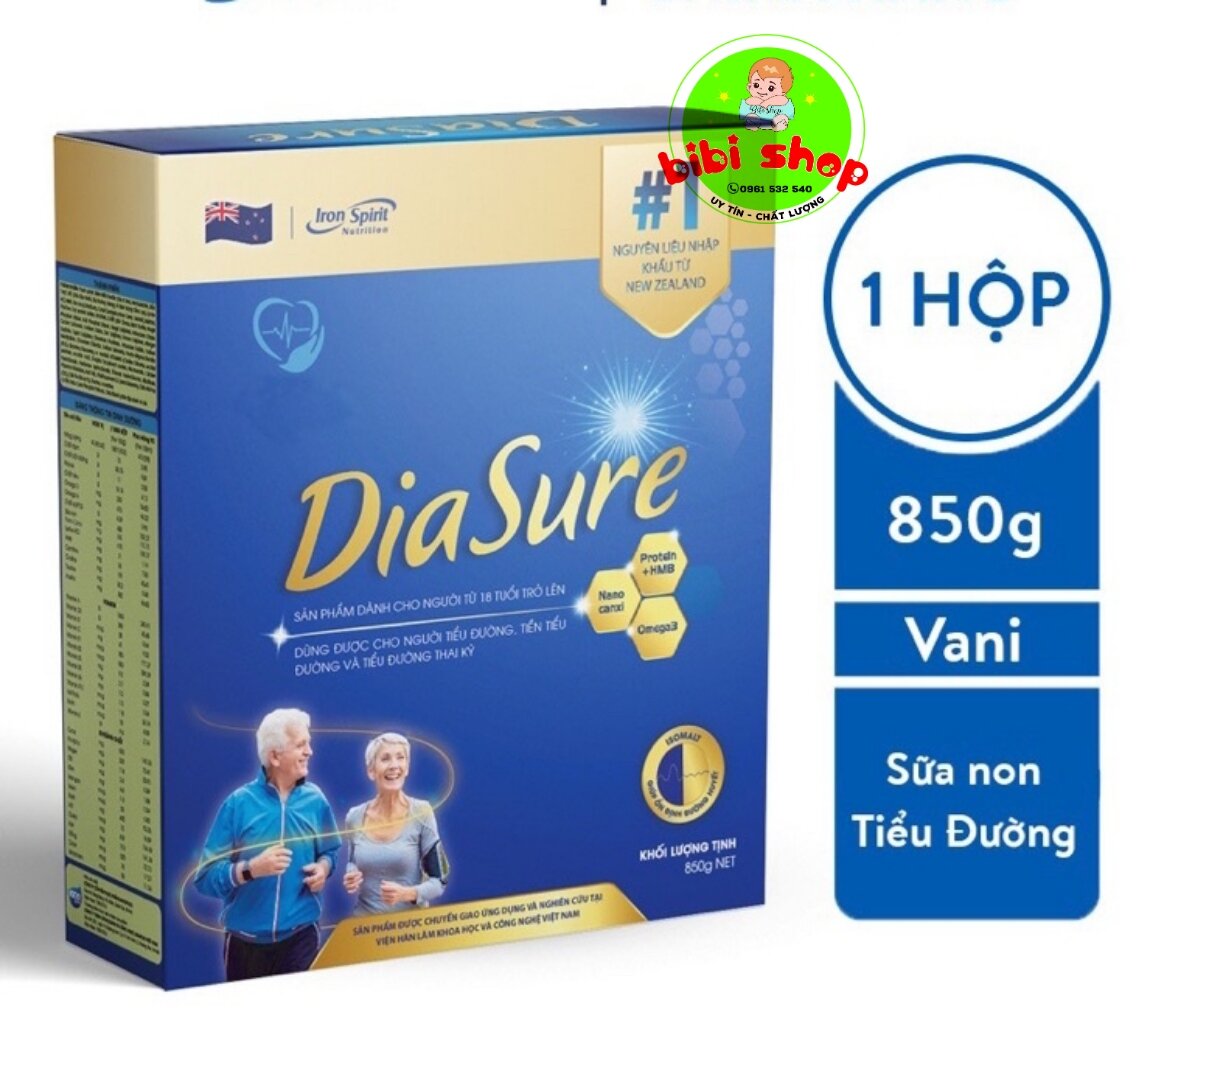 Sữa diasure hộp giấy 850gr mẫu mới hàng chính hãng